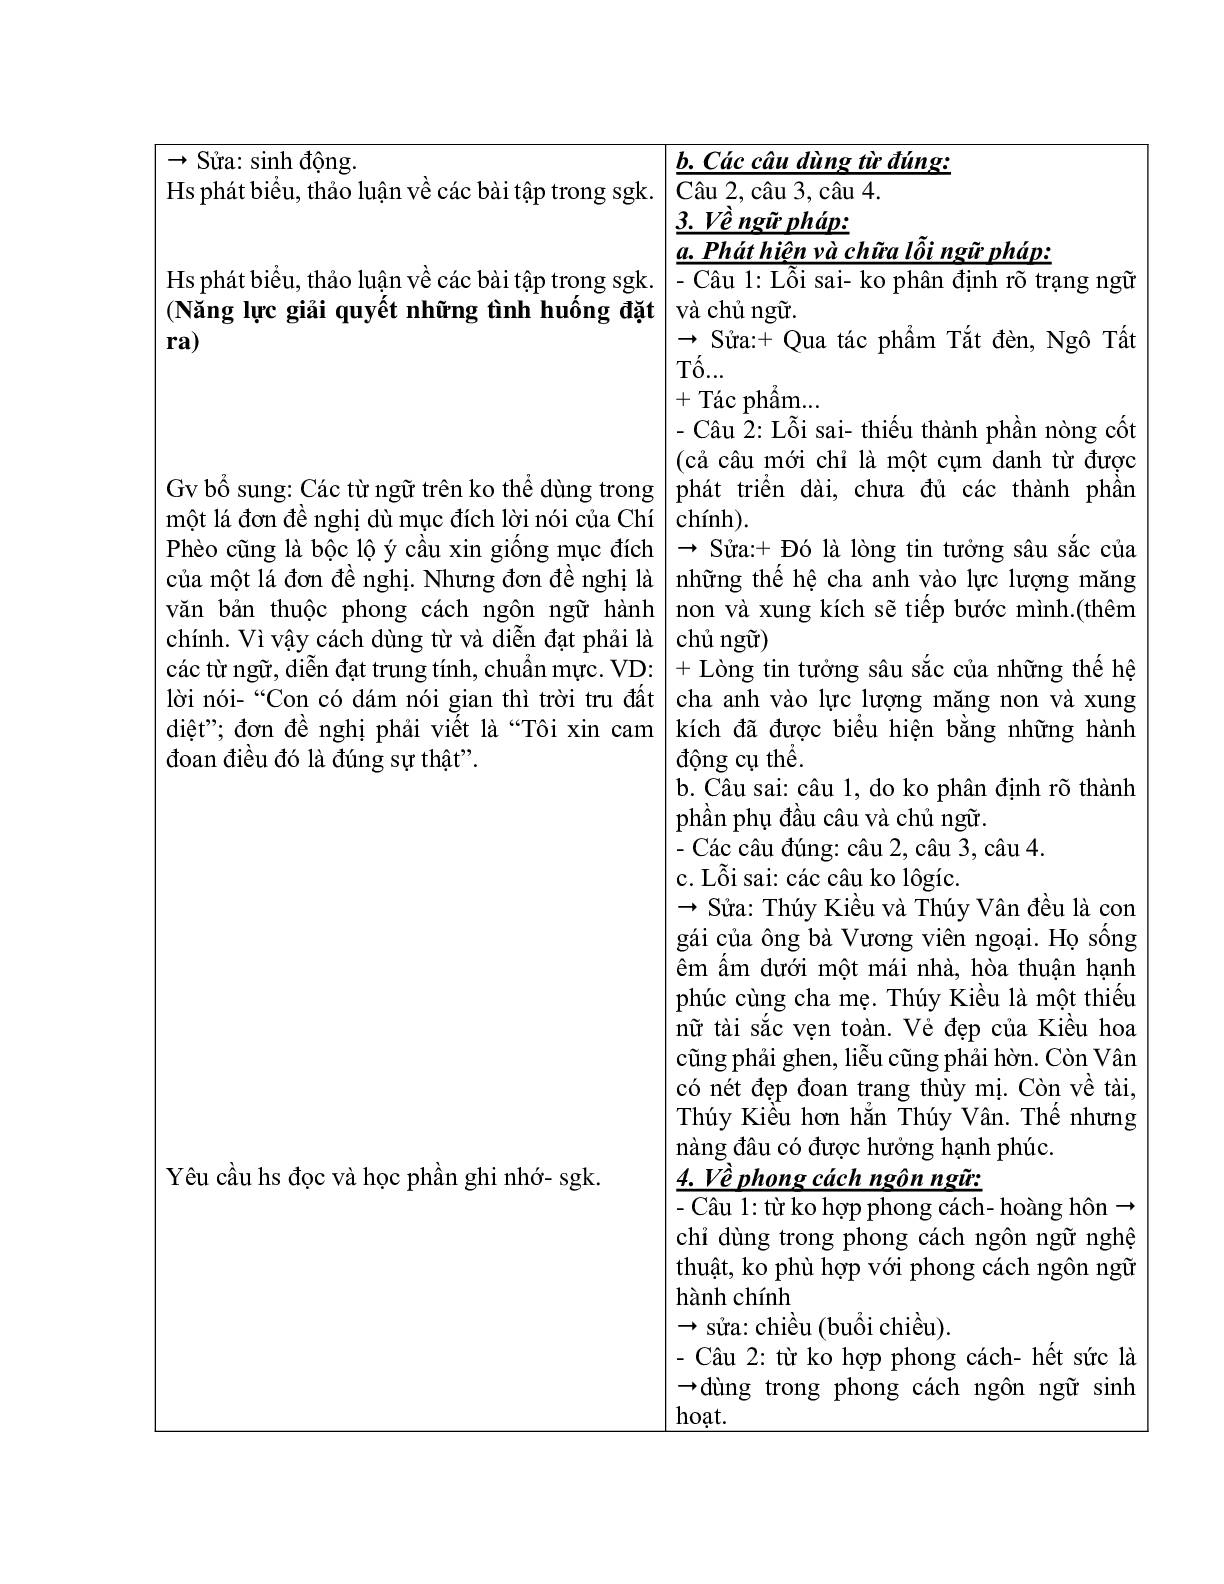 Giáo án ngữ văn lớp 10 Tiết 70: Những yêu cầu về sử dụng tiếng việt (trang 3)